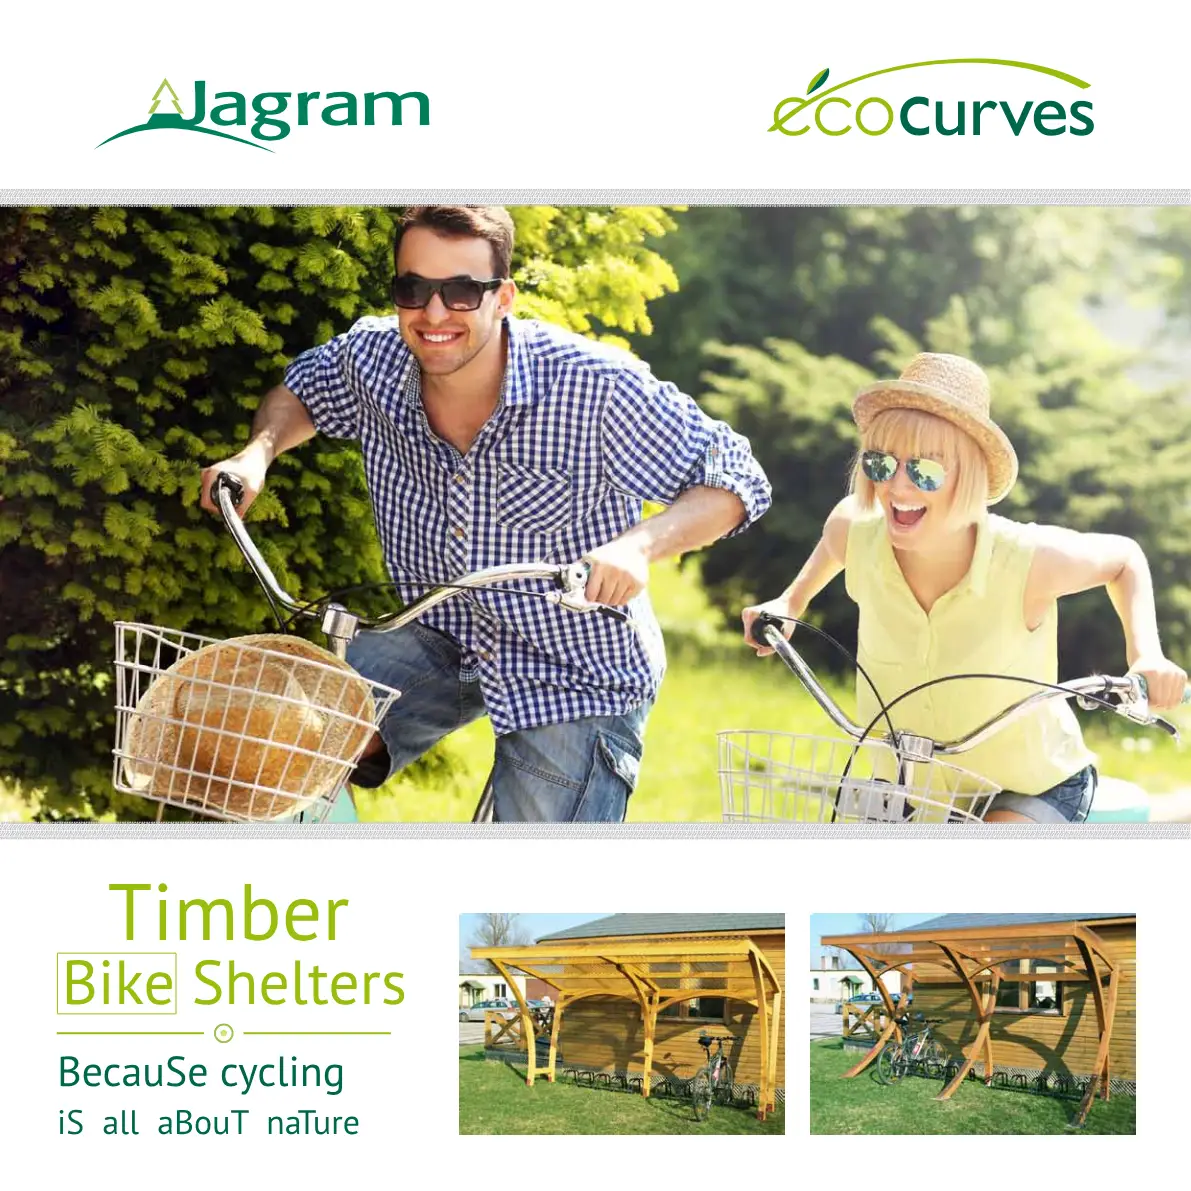 Brochure_Ecocurves_by_Jagram_Timber_Bike_Shelters